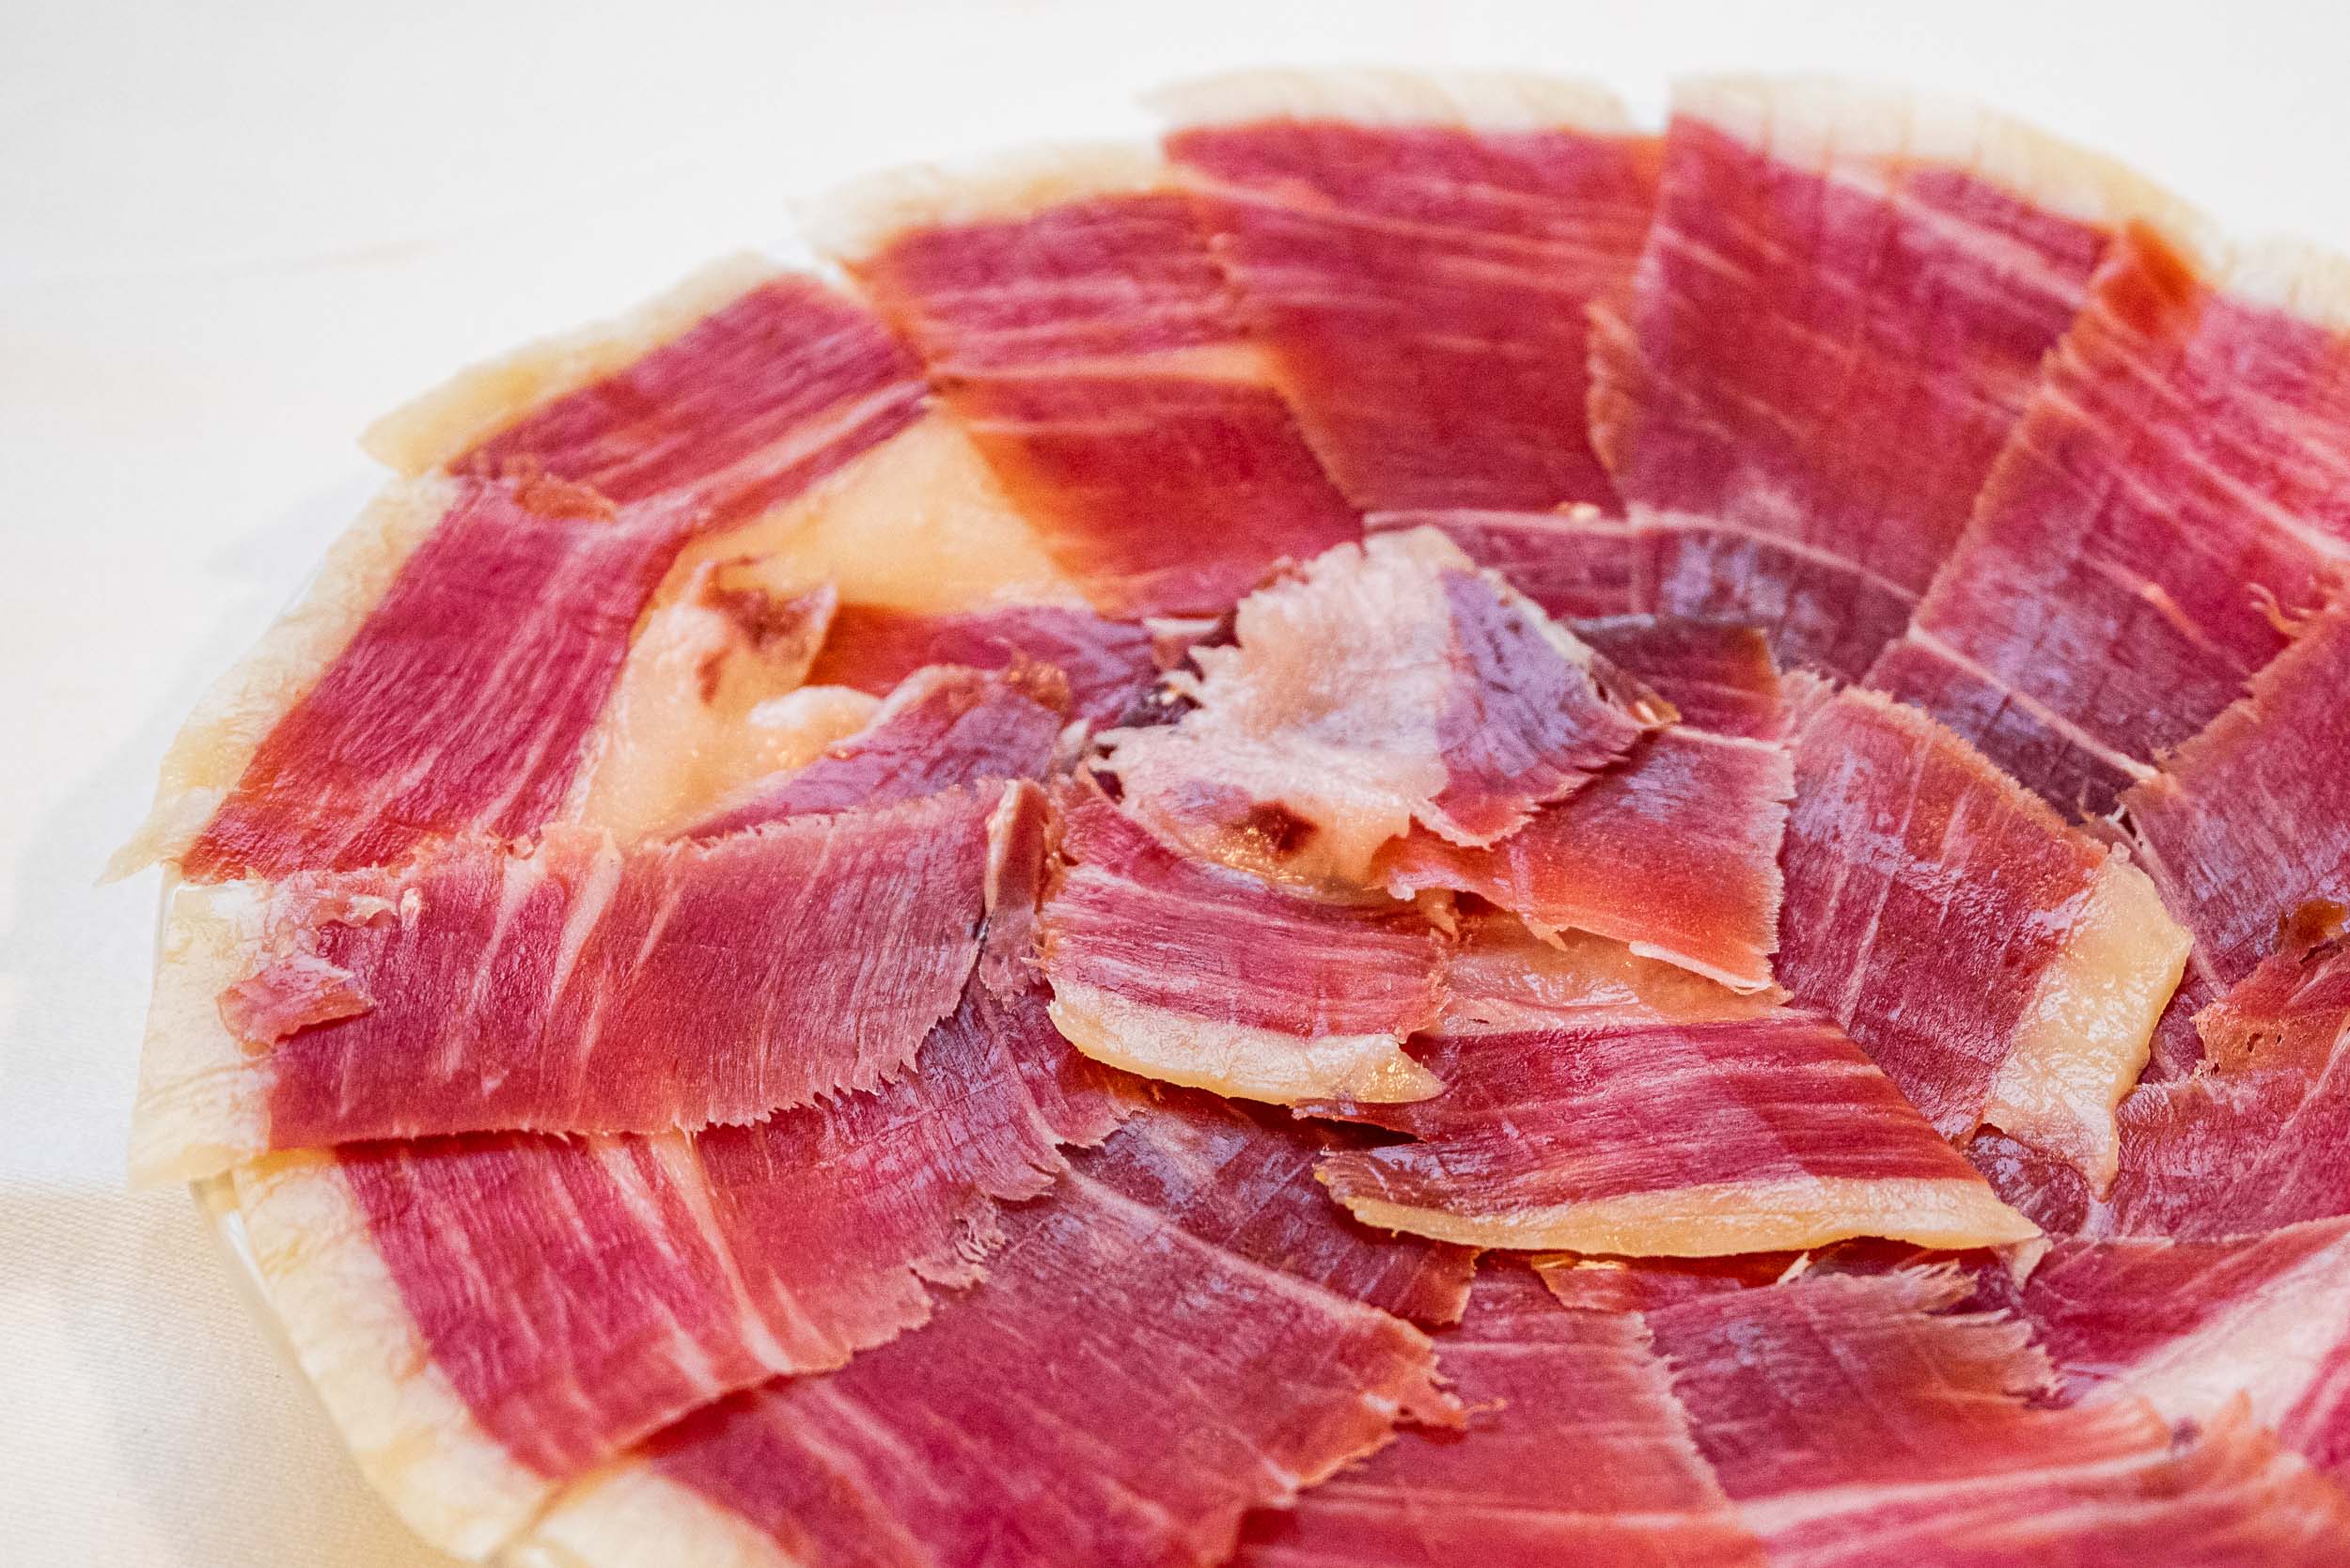 Belloterra Iberian cebo ham from Los Pedroches Valley (50gr./100gr.)